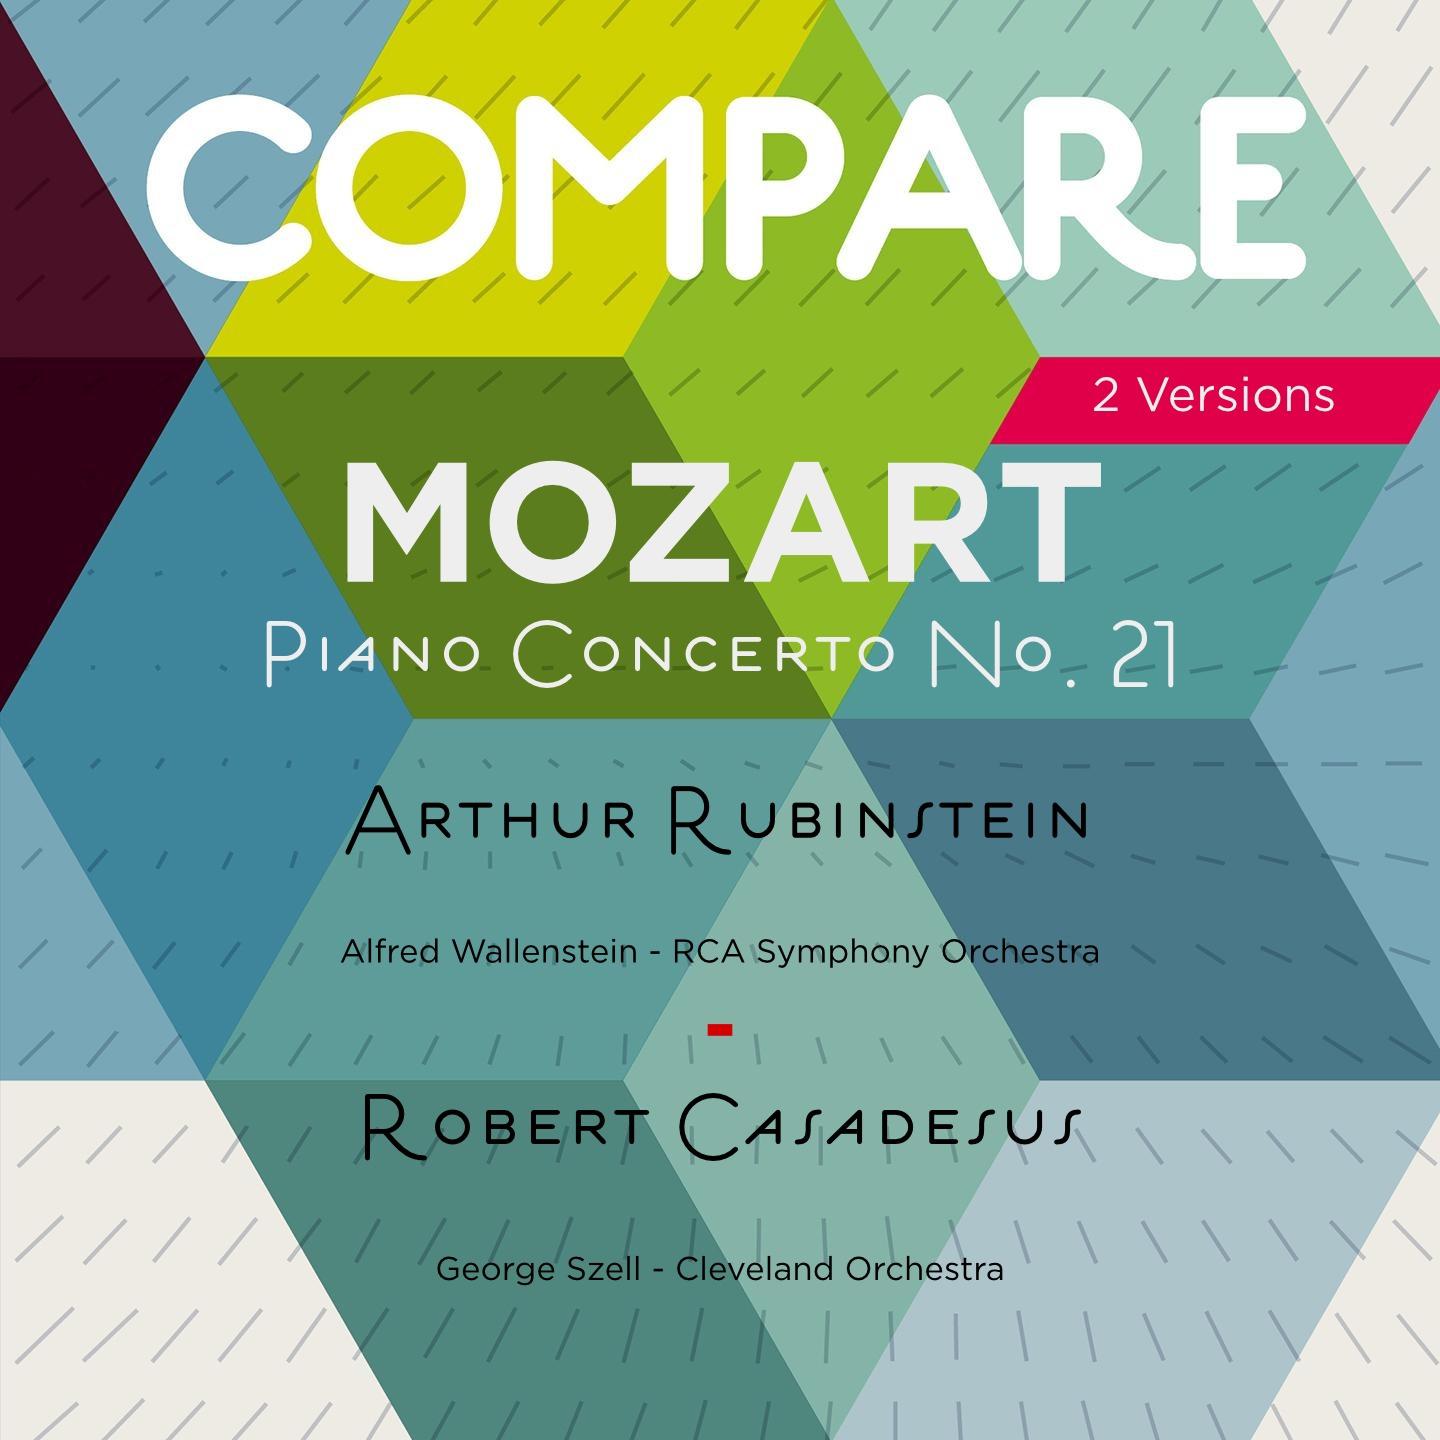 Mozart: Concerto No. 21, Arthur Rubinstein vs. Robert Casadesus